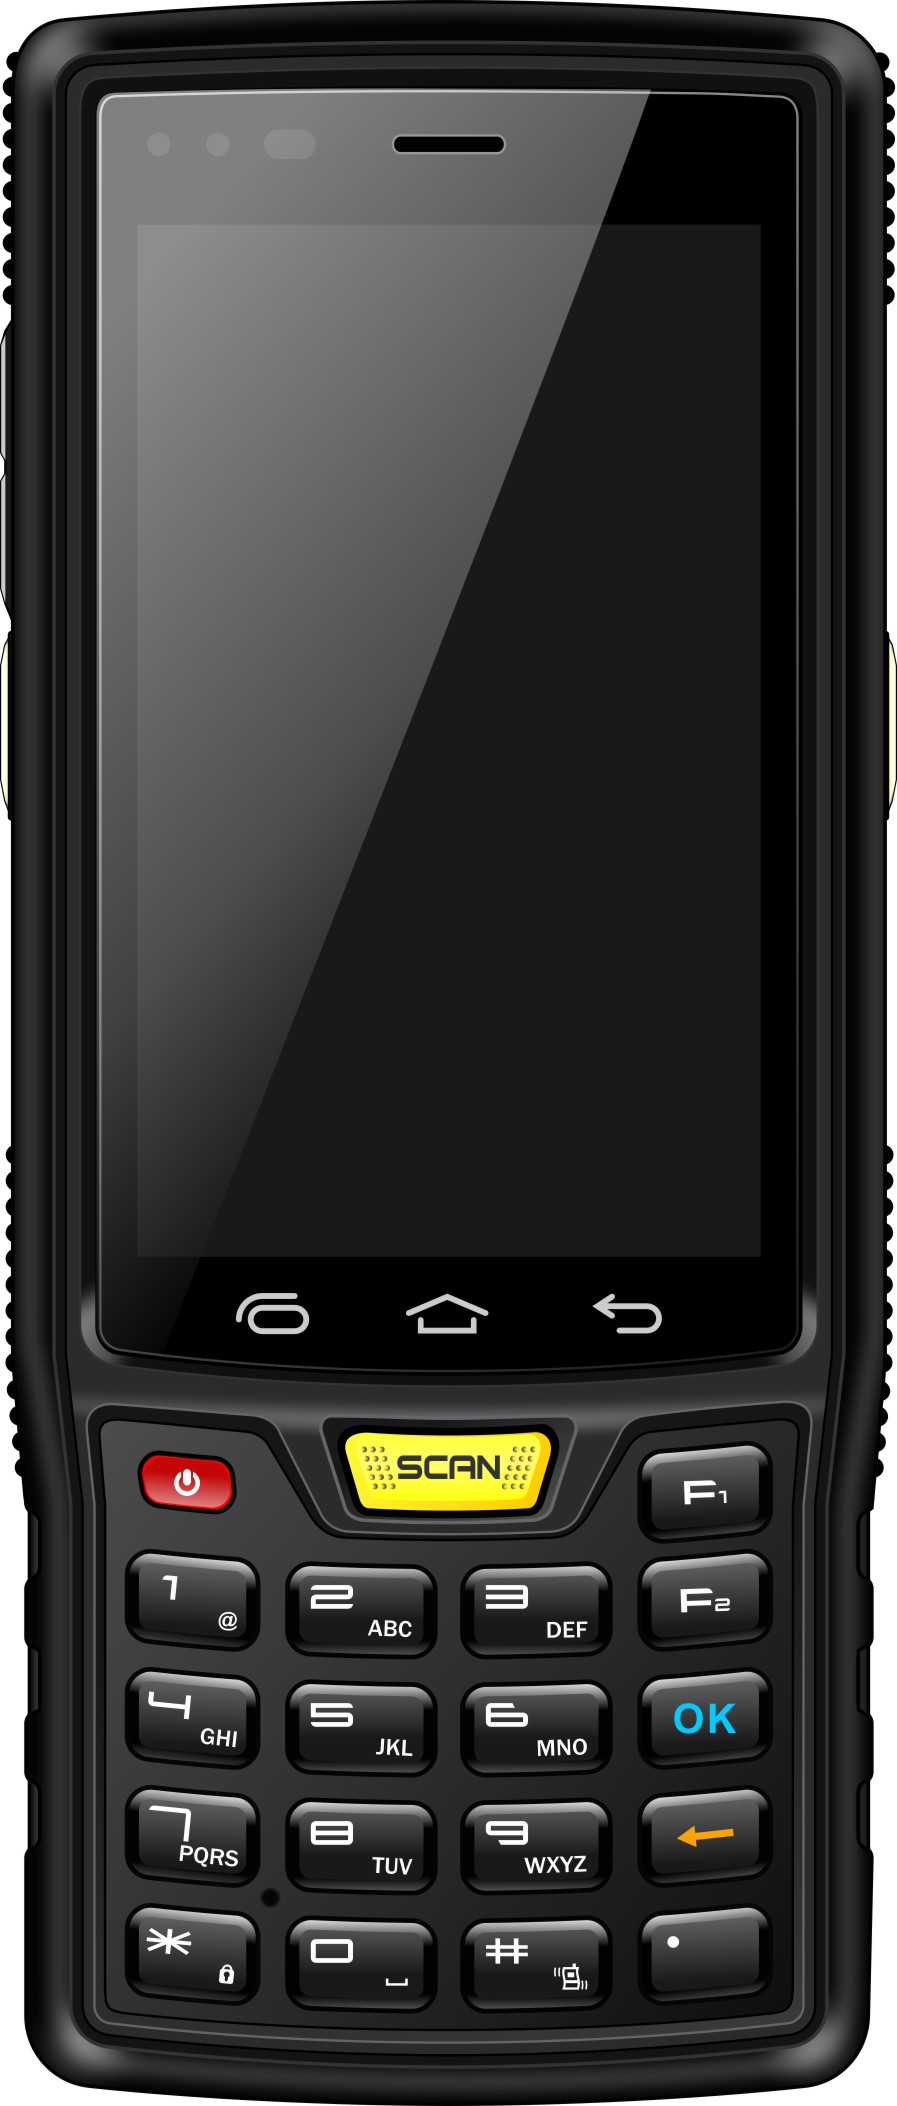 供应用于通信的PDA手持机RFID超高频读写器；数据信息采集器；指纹识别；扫描条形码二维码；